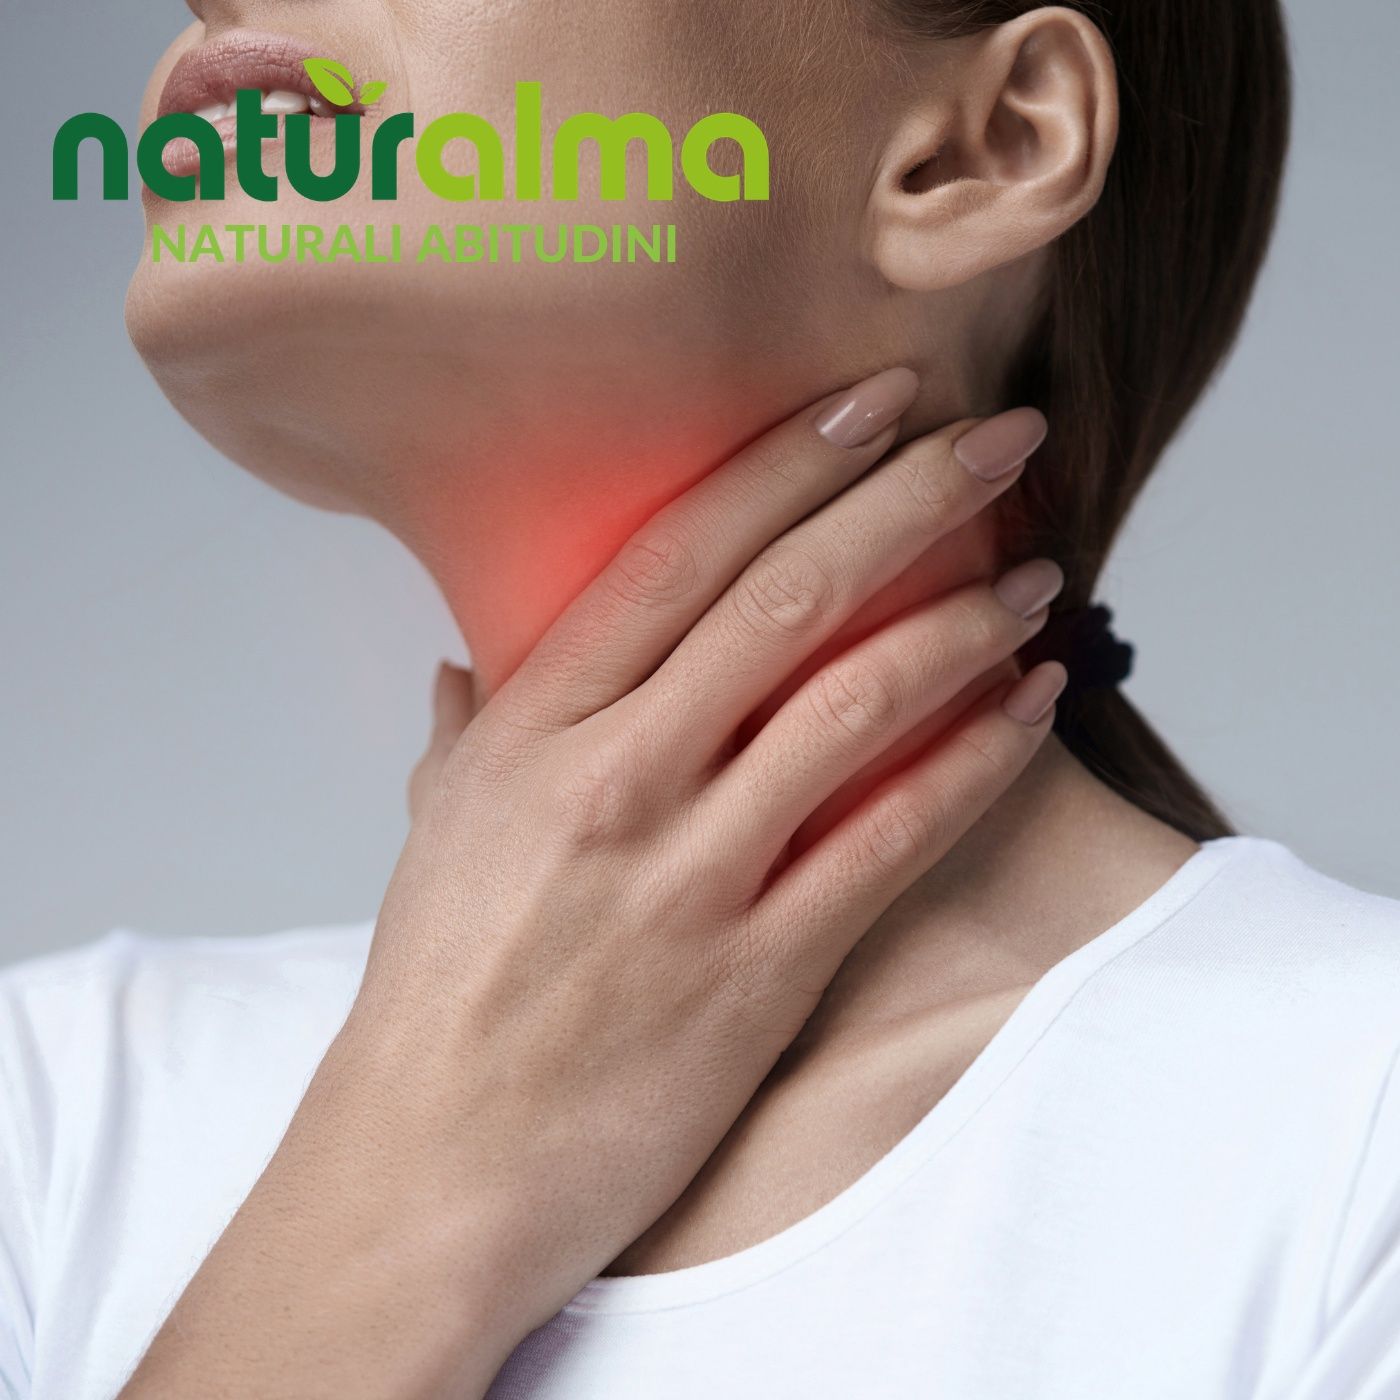 Naturalma - ROUTINE - Contrasta il mal di gola